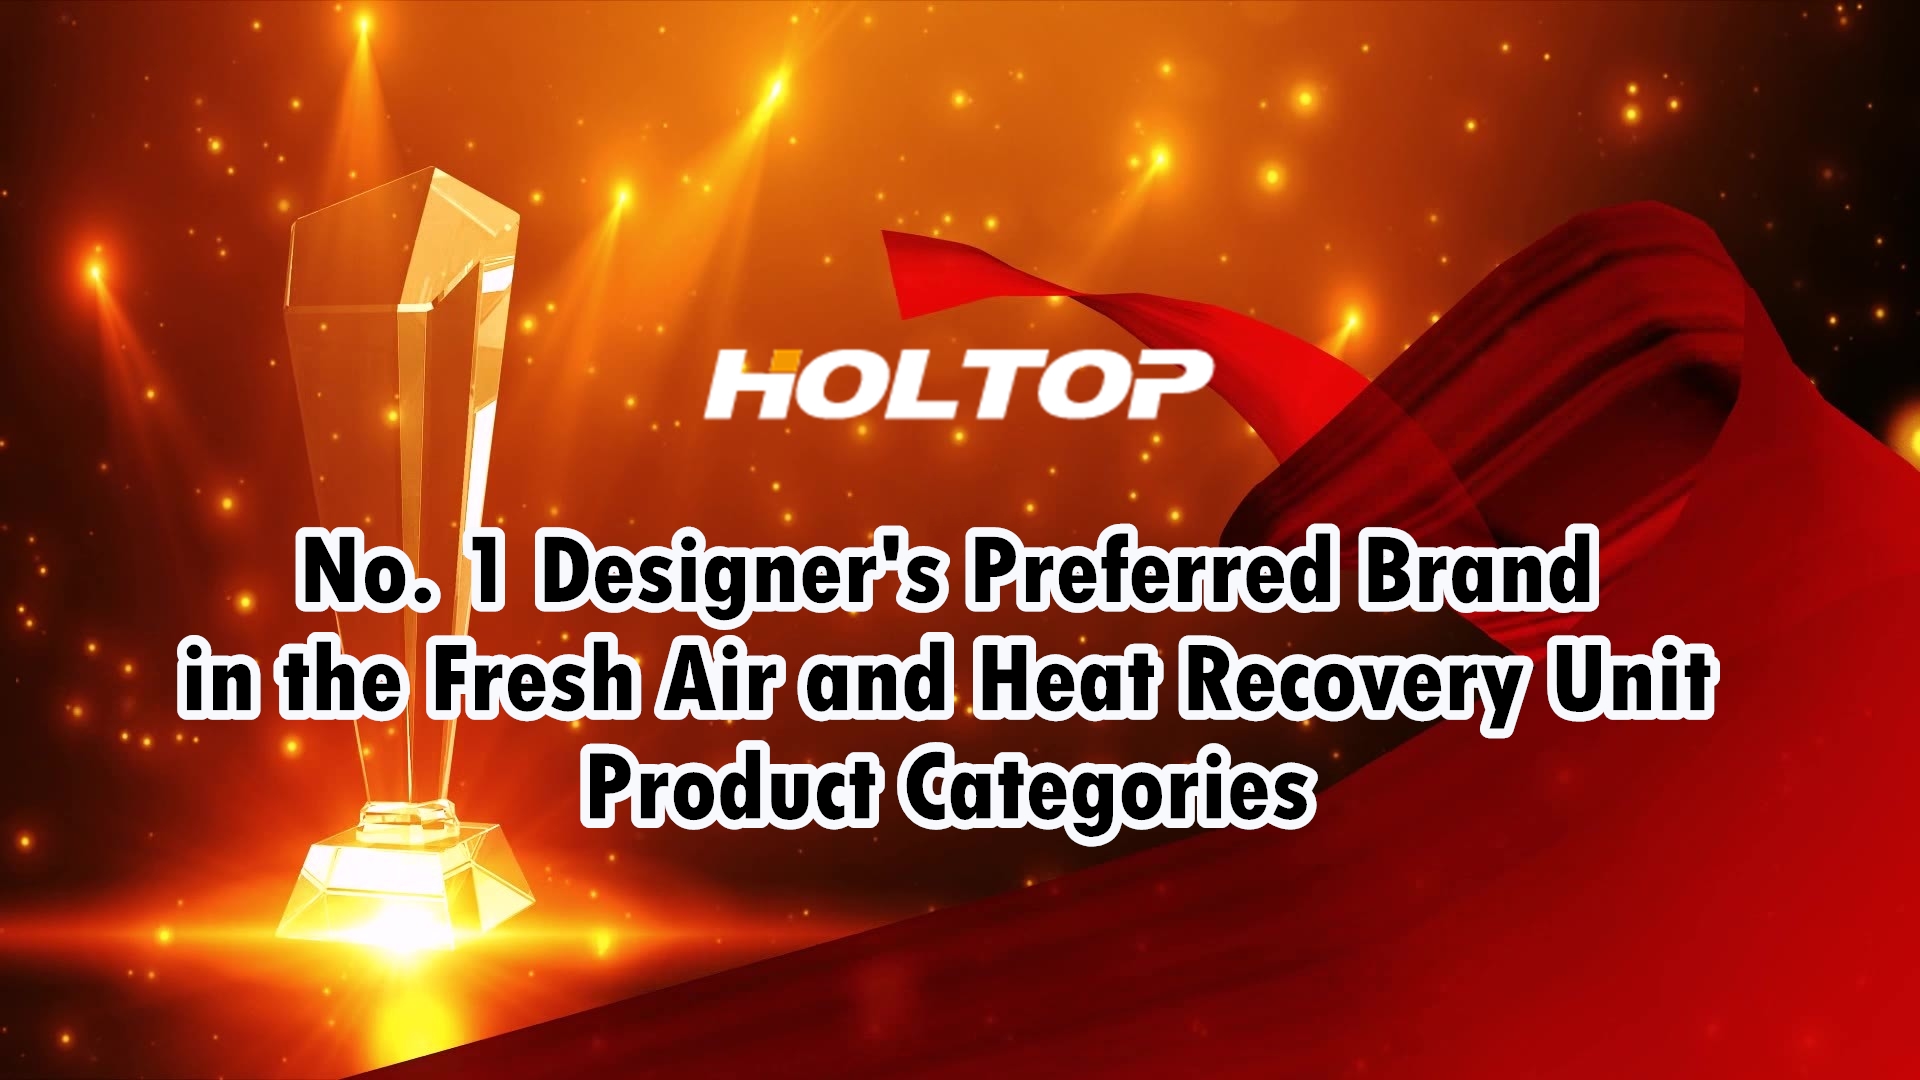 HOLTOP является предпочтительным брендом дизайнеров № 1 в категориях продуктов для свежего воздуха и рекуперации тепла на рынке Китая.